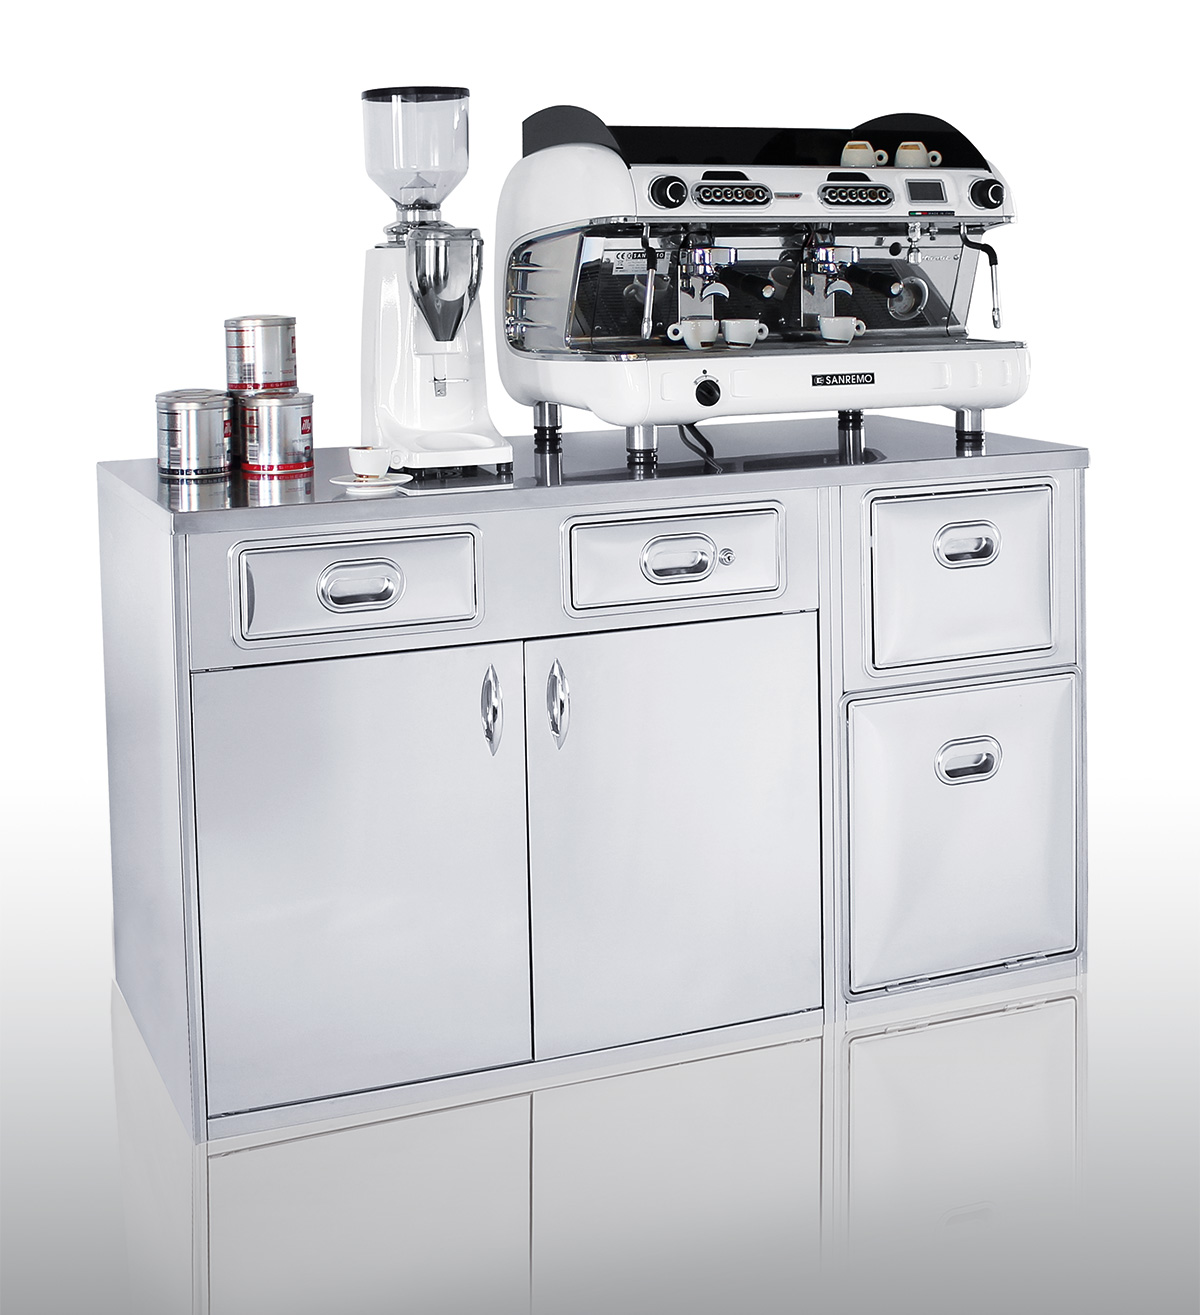 Banco macchina caffè con attrezzatura completa - Priolinox